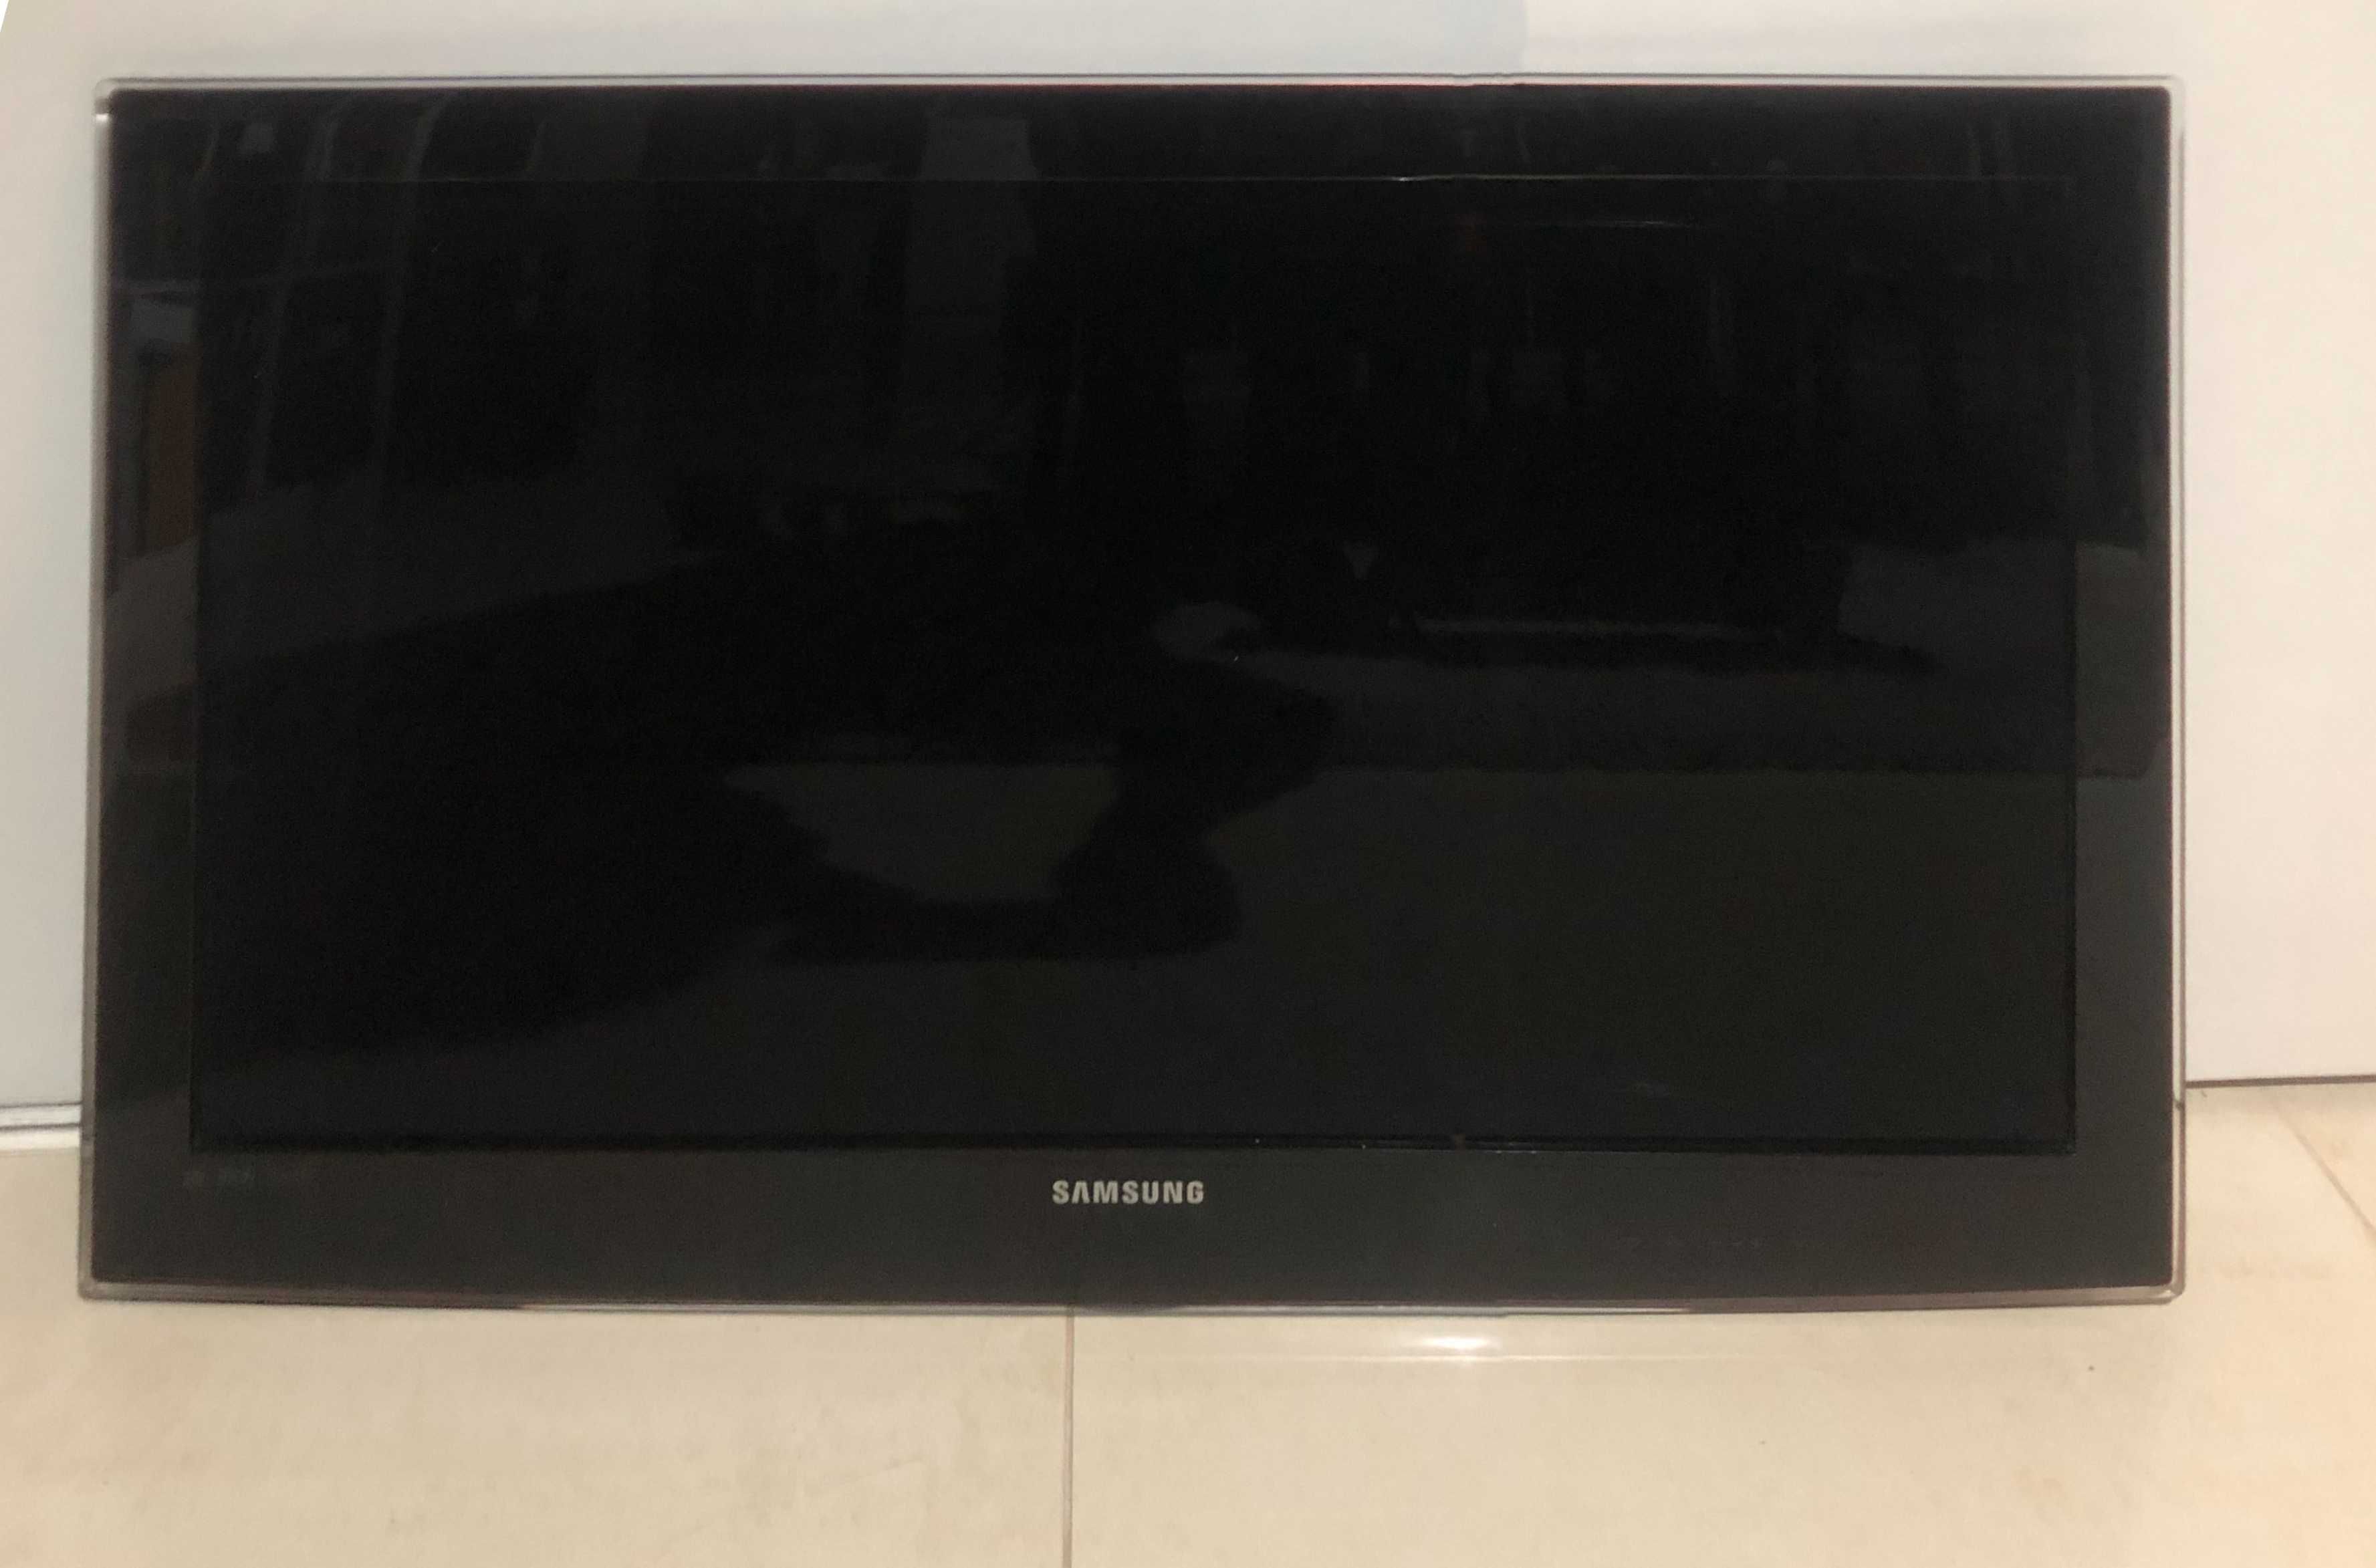 TV Samsung de 37" (94 cm) - avaria na placa